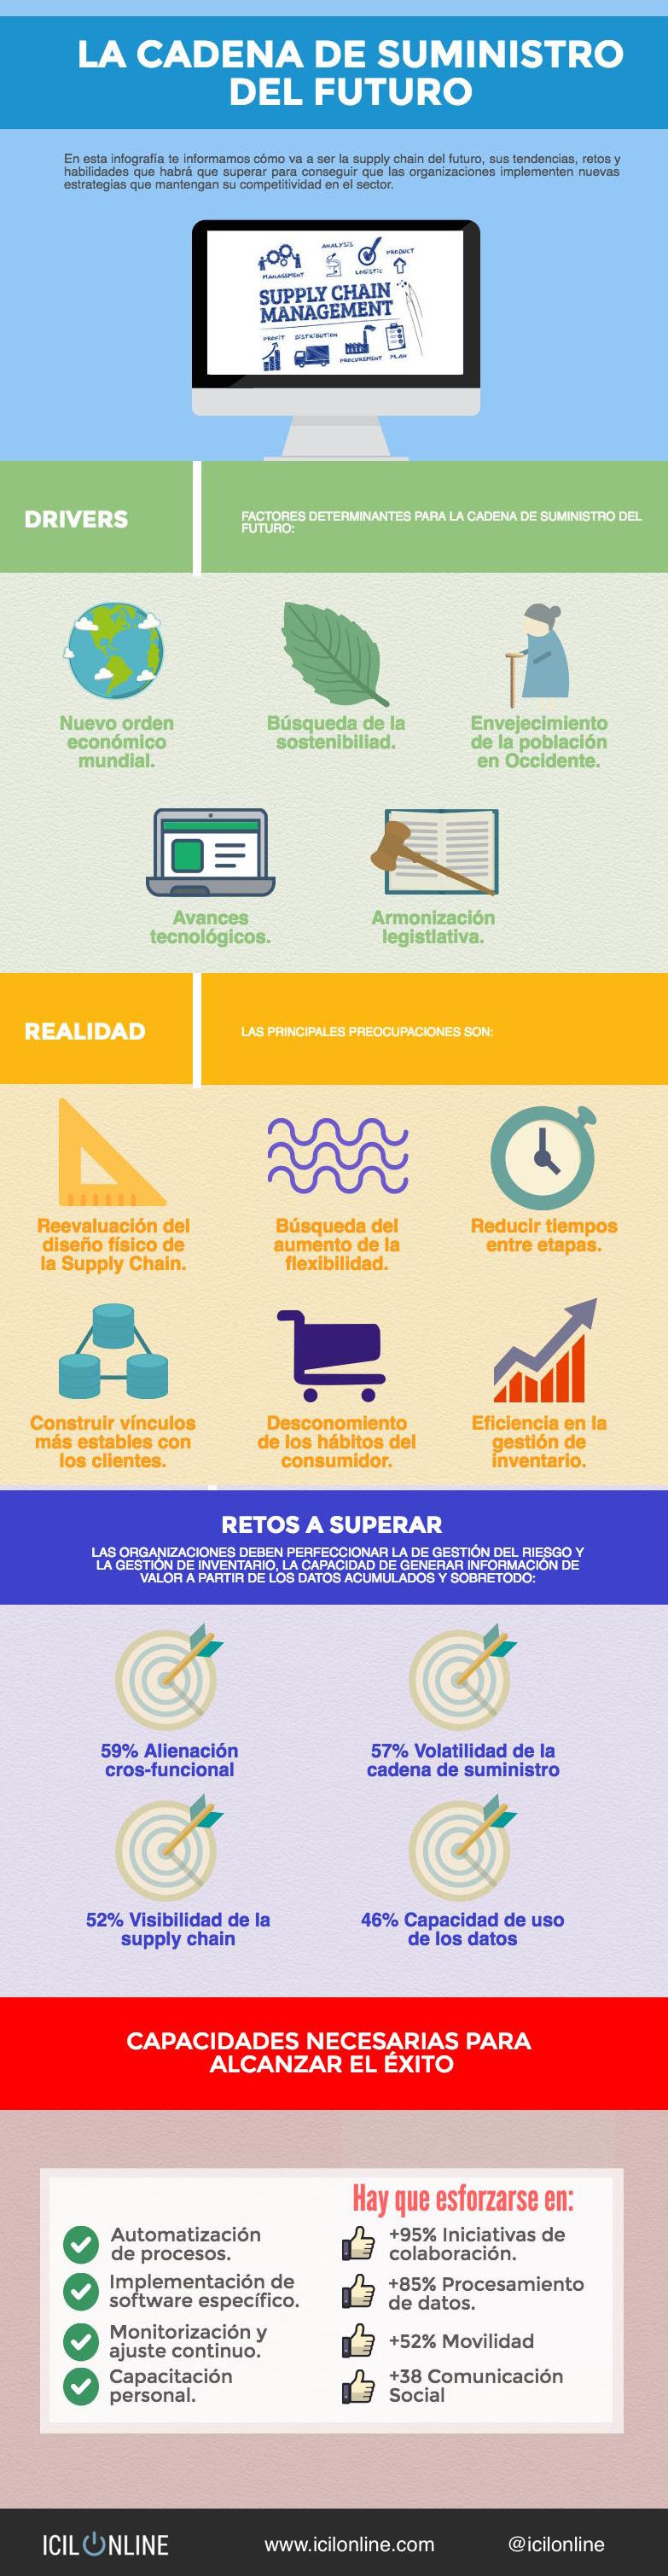 cadena_suministro_del_futuro-infografia